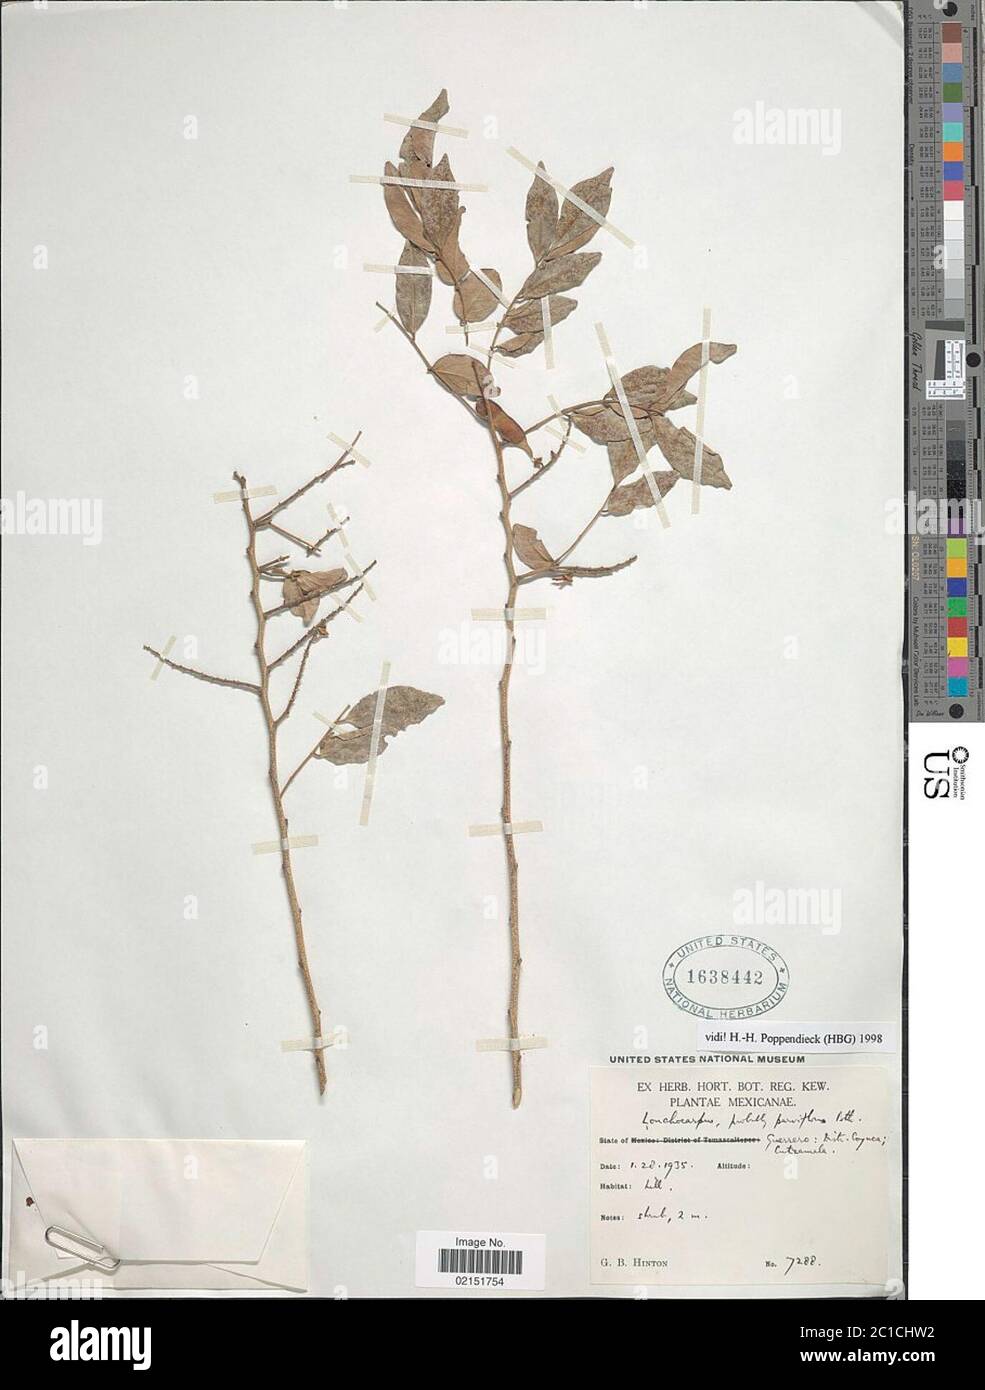 Lonchocarpus parviflorus Benth Lonchocarpus parviflorus Benth. Stock Photo